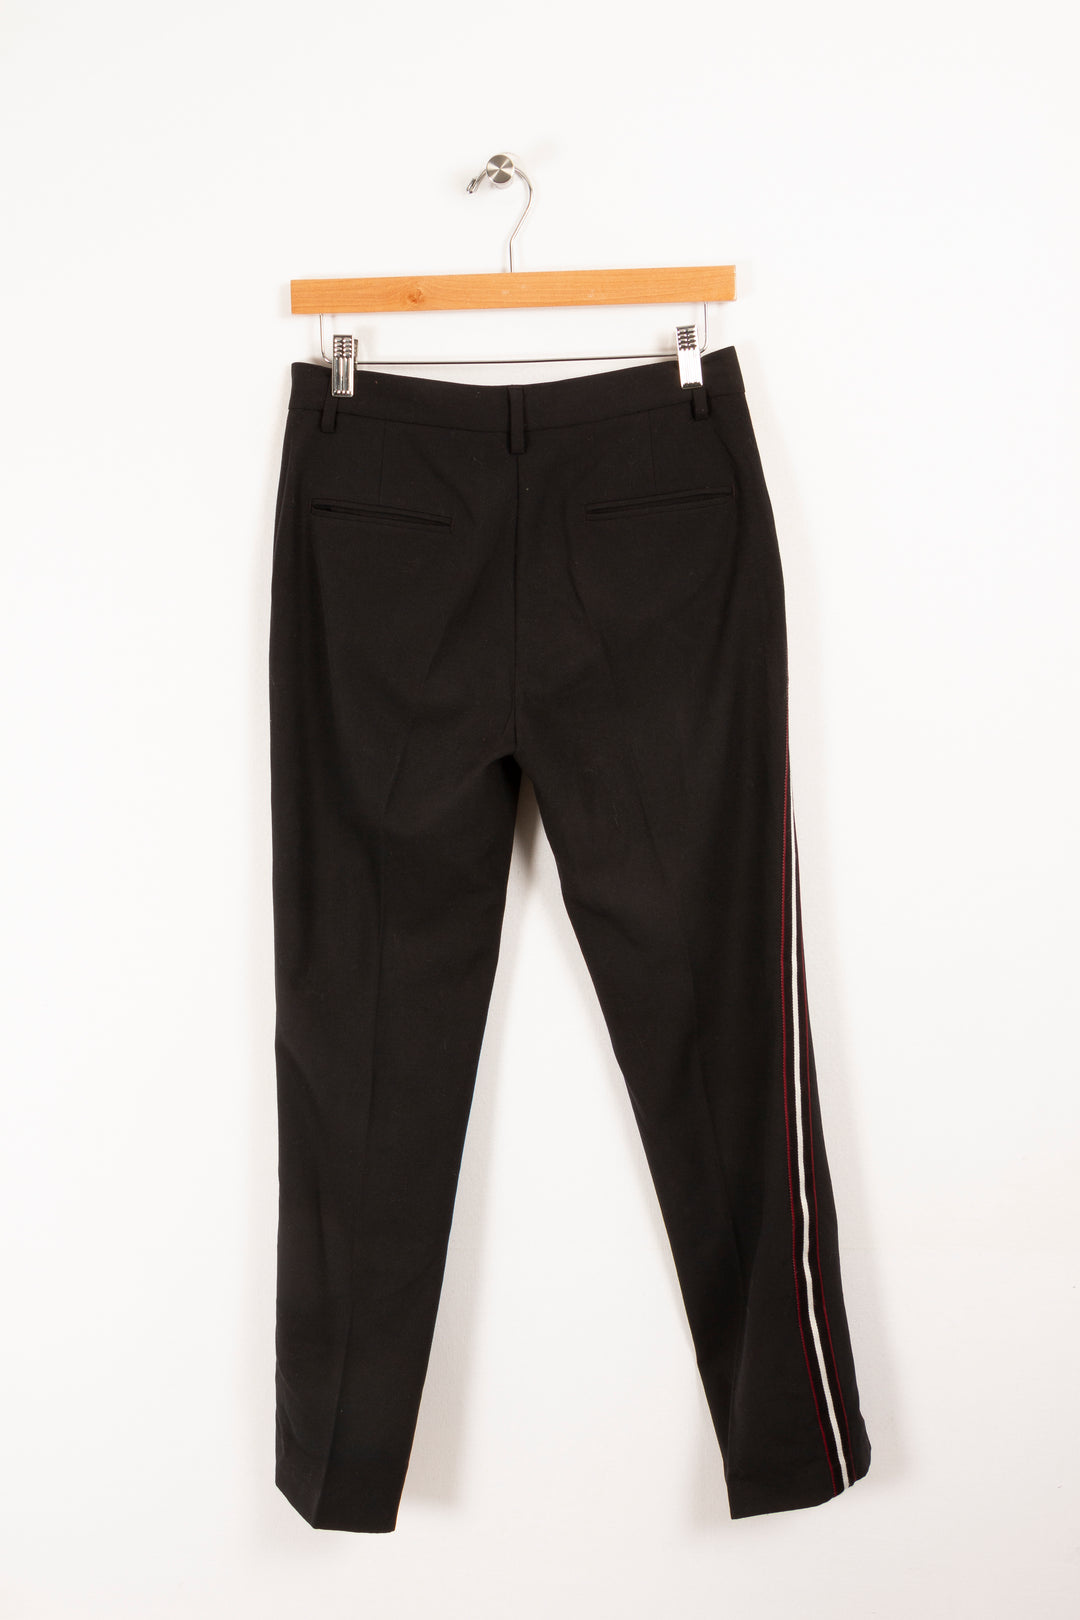 Black pants - Size M/38